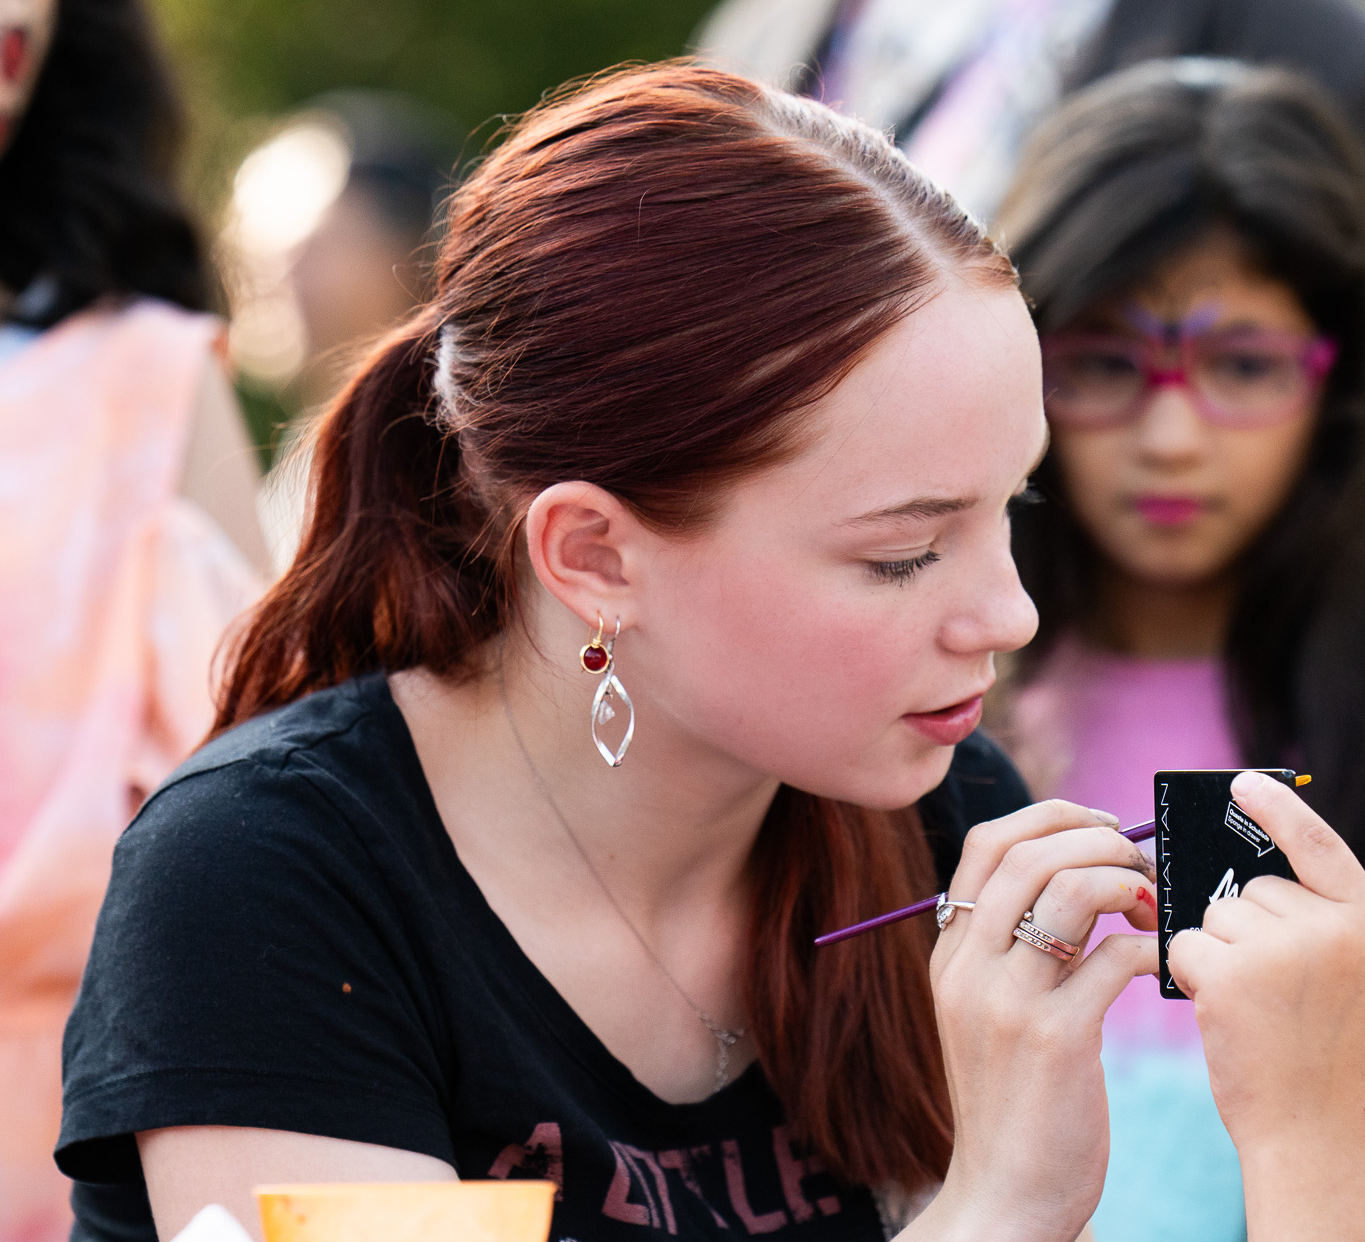 Eine junge Frau trägt Make up auf. Im Hintergrund sieht man ein Kind mit Theaterschminke.